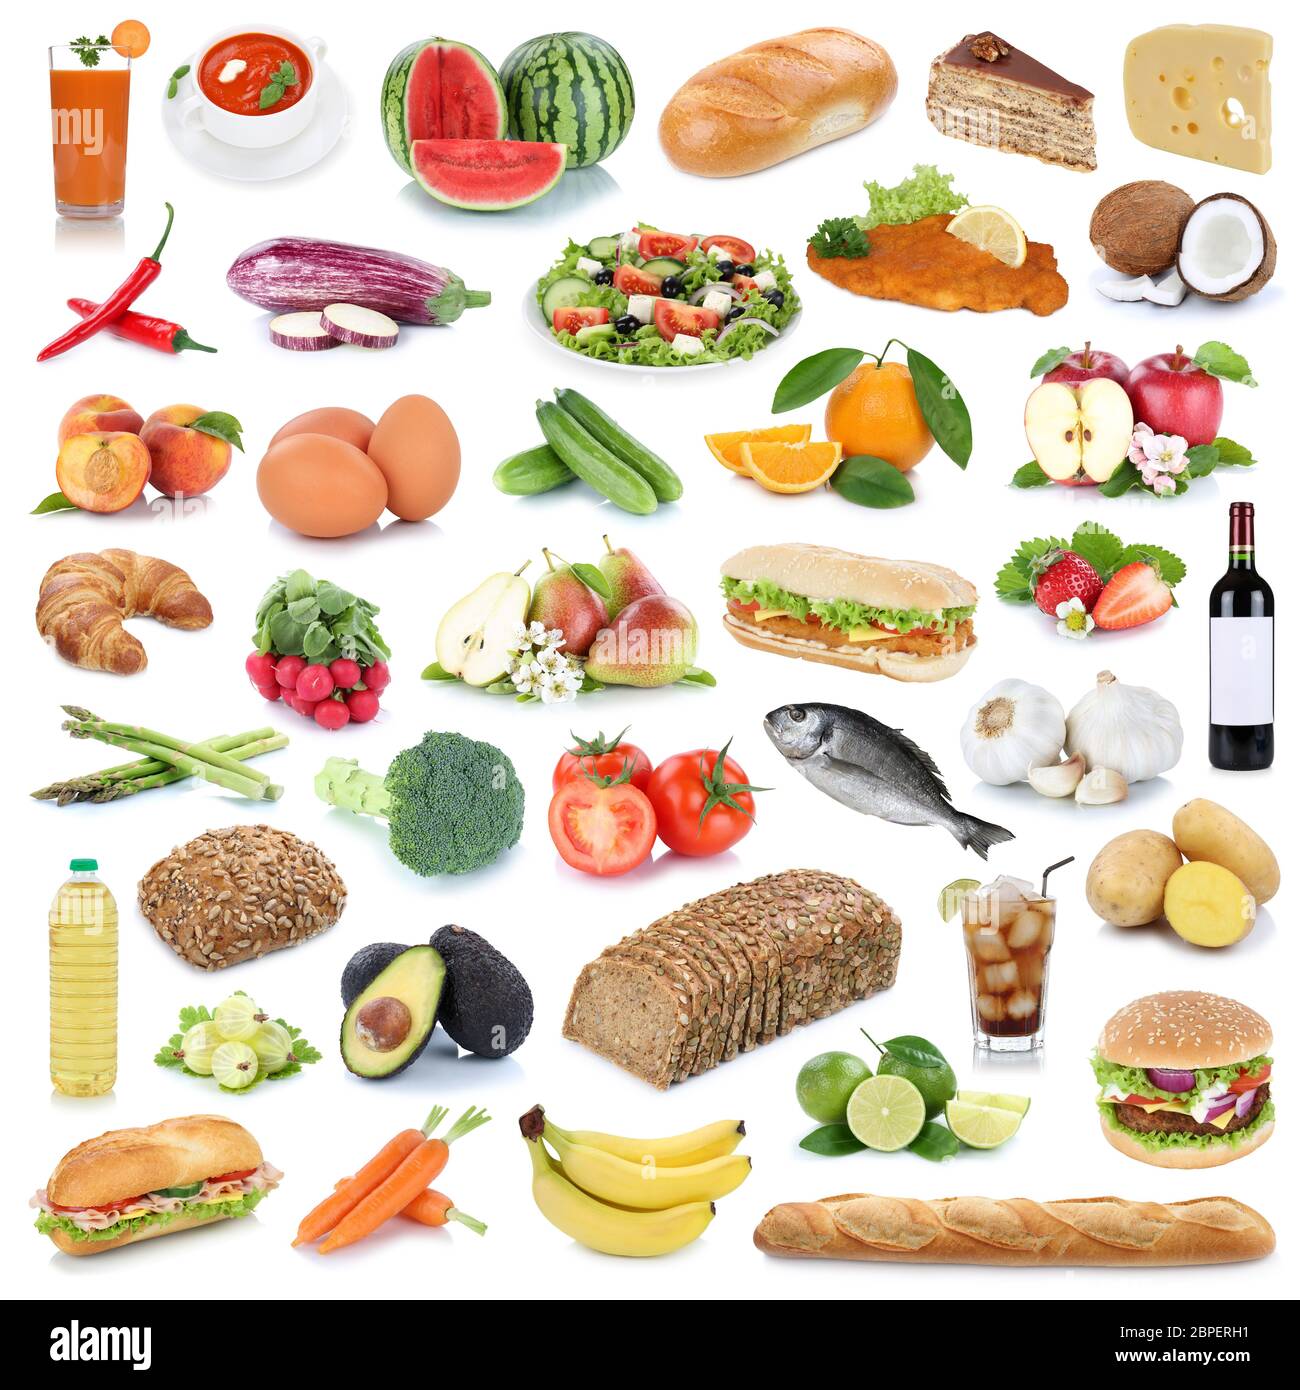 Essen Sammlung Hintergrund gesunde Ernährung Obst und Gemüse Früchte Lebensmittel Freisteller freigestellt isoliert Stock Photo